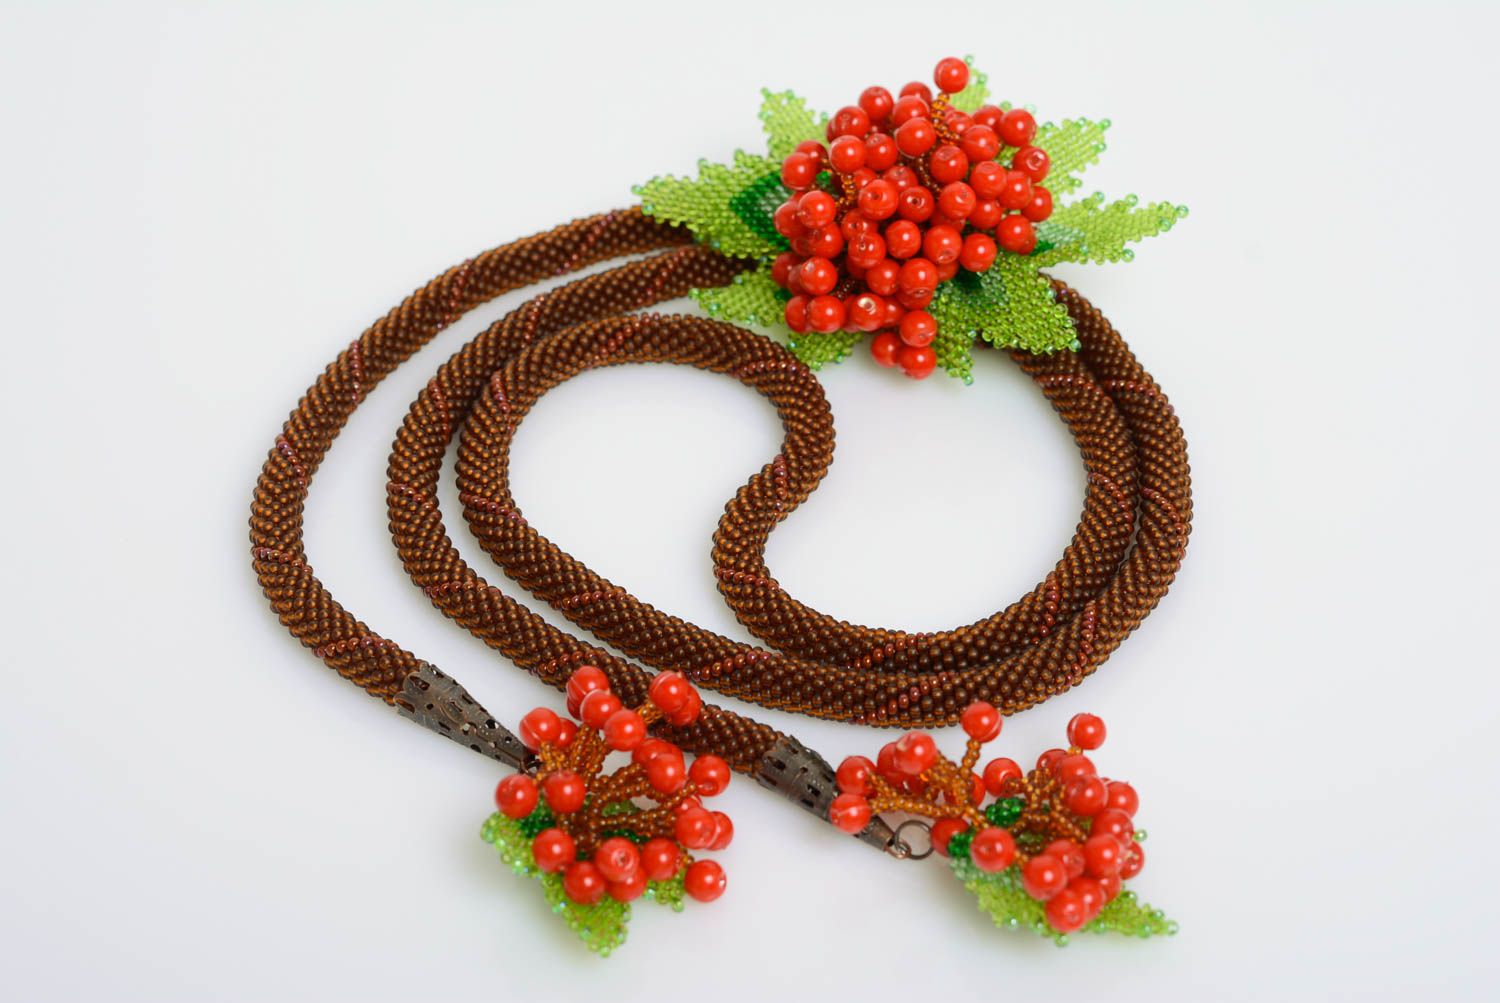 Жгут из бисера коричневый с красными ягодами красивый стильный ручная работа фото 1